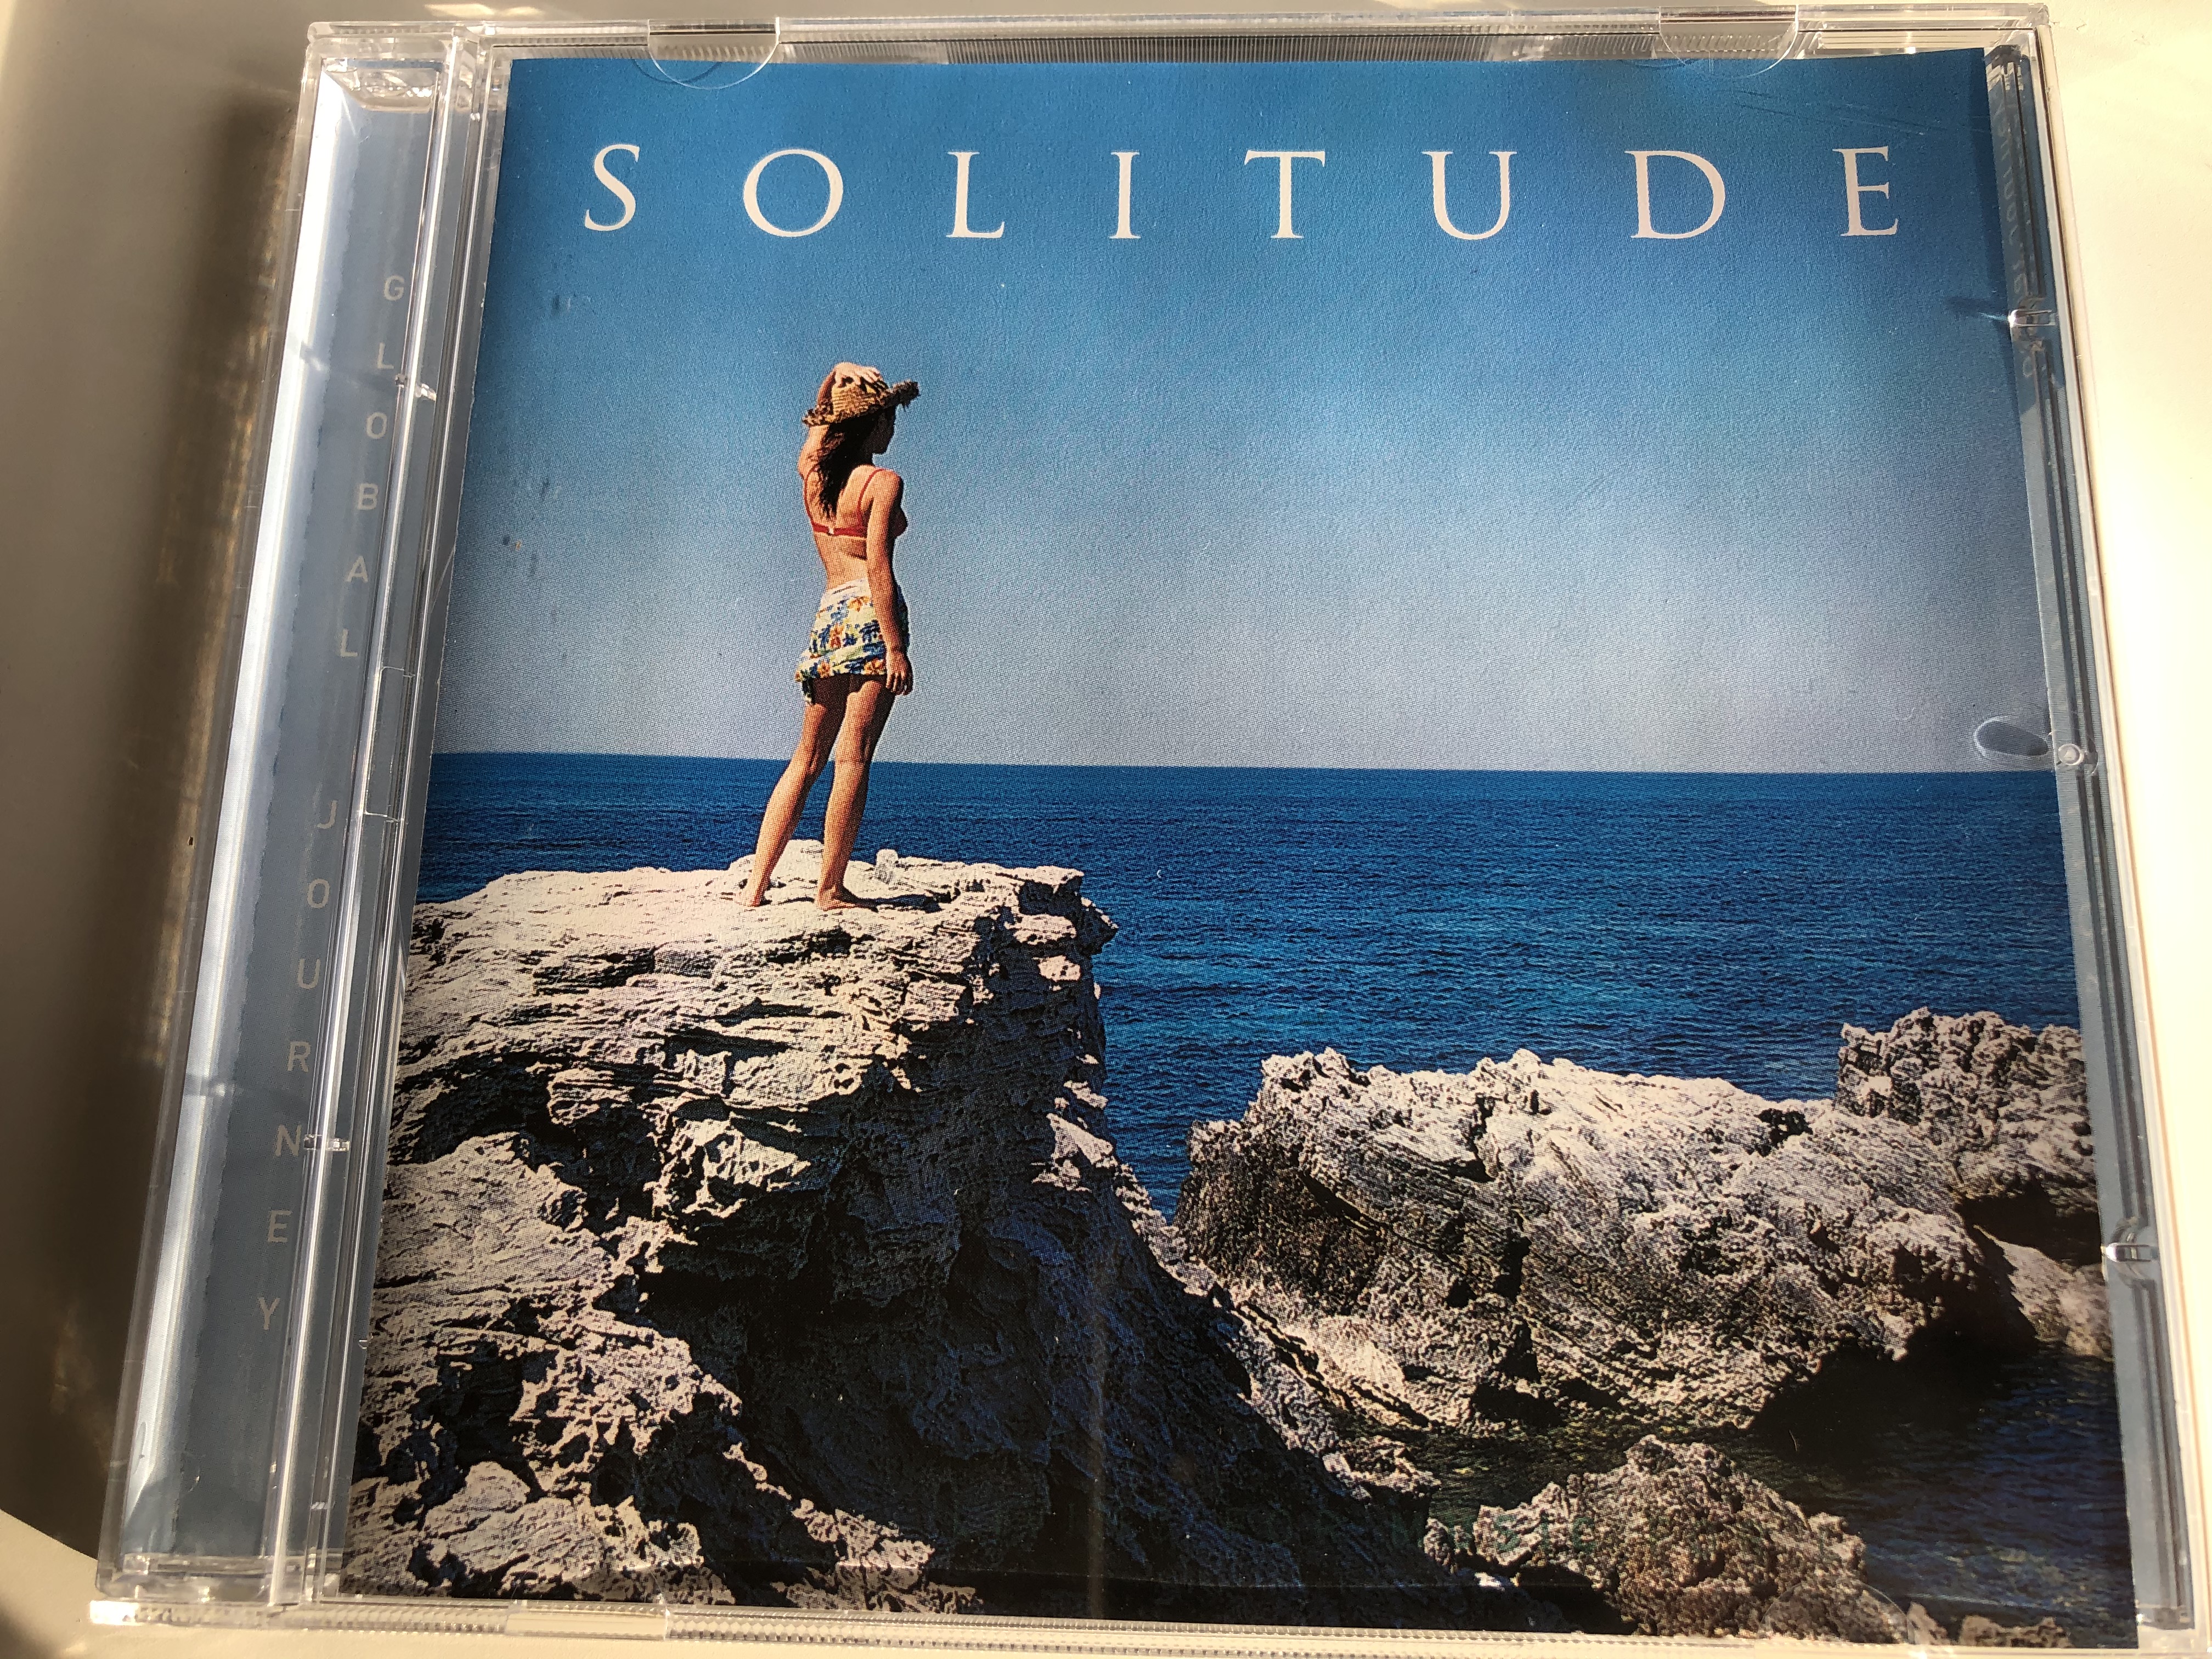 solitude-global-journey-audio-cd-stereo-gj3679-1-.jpg